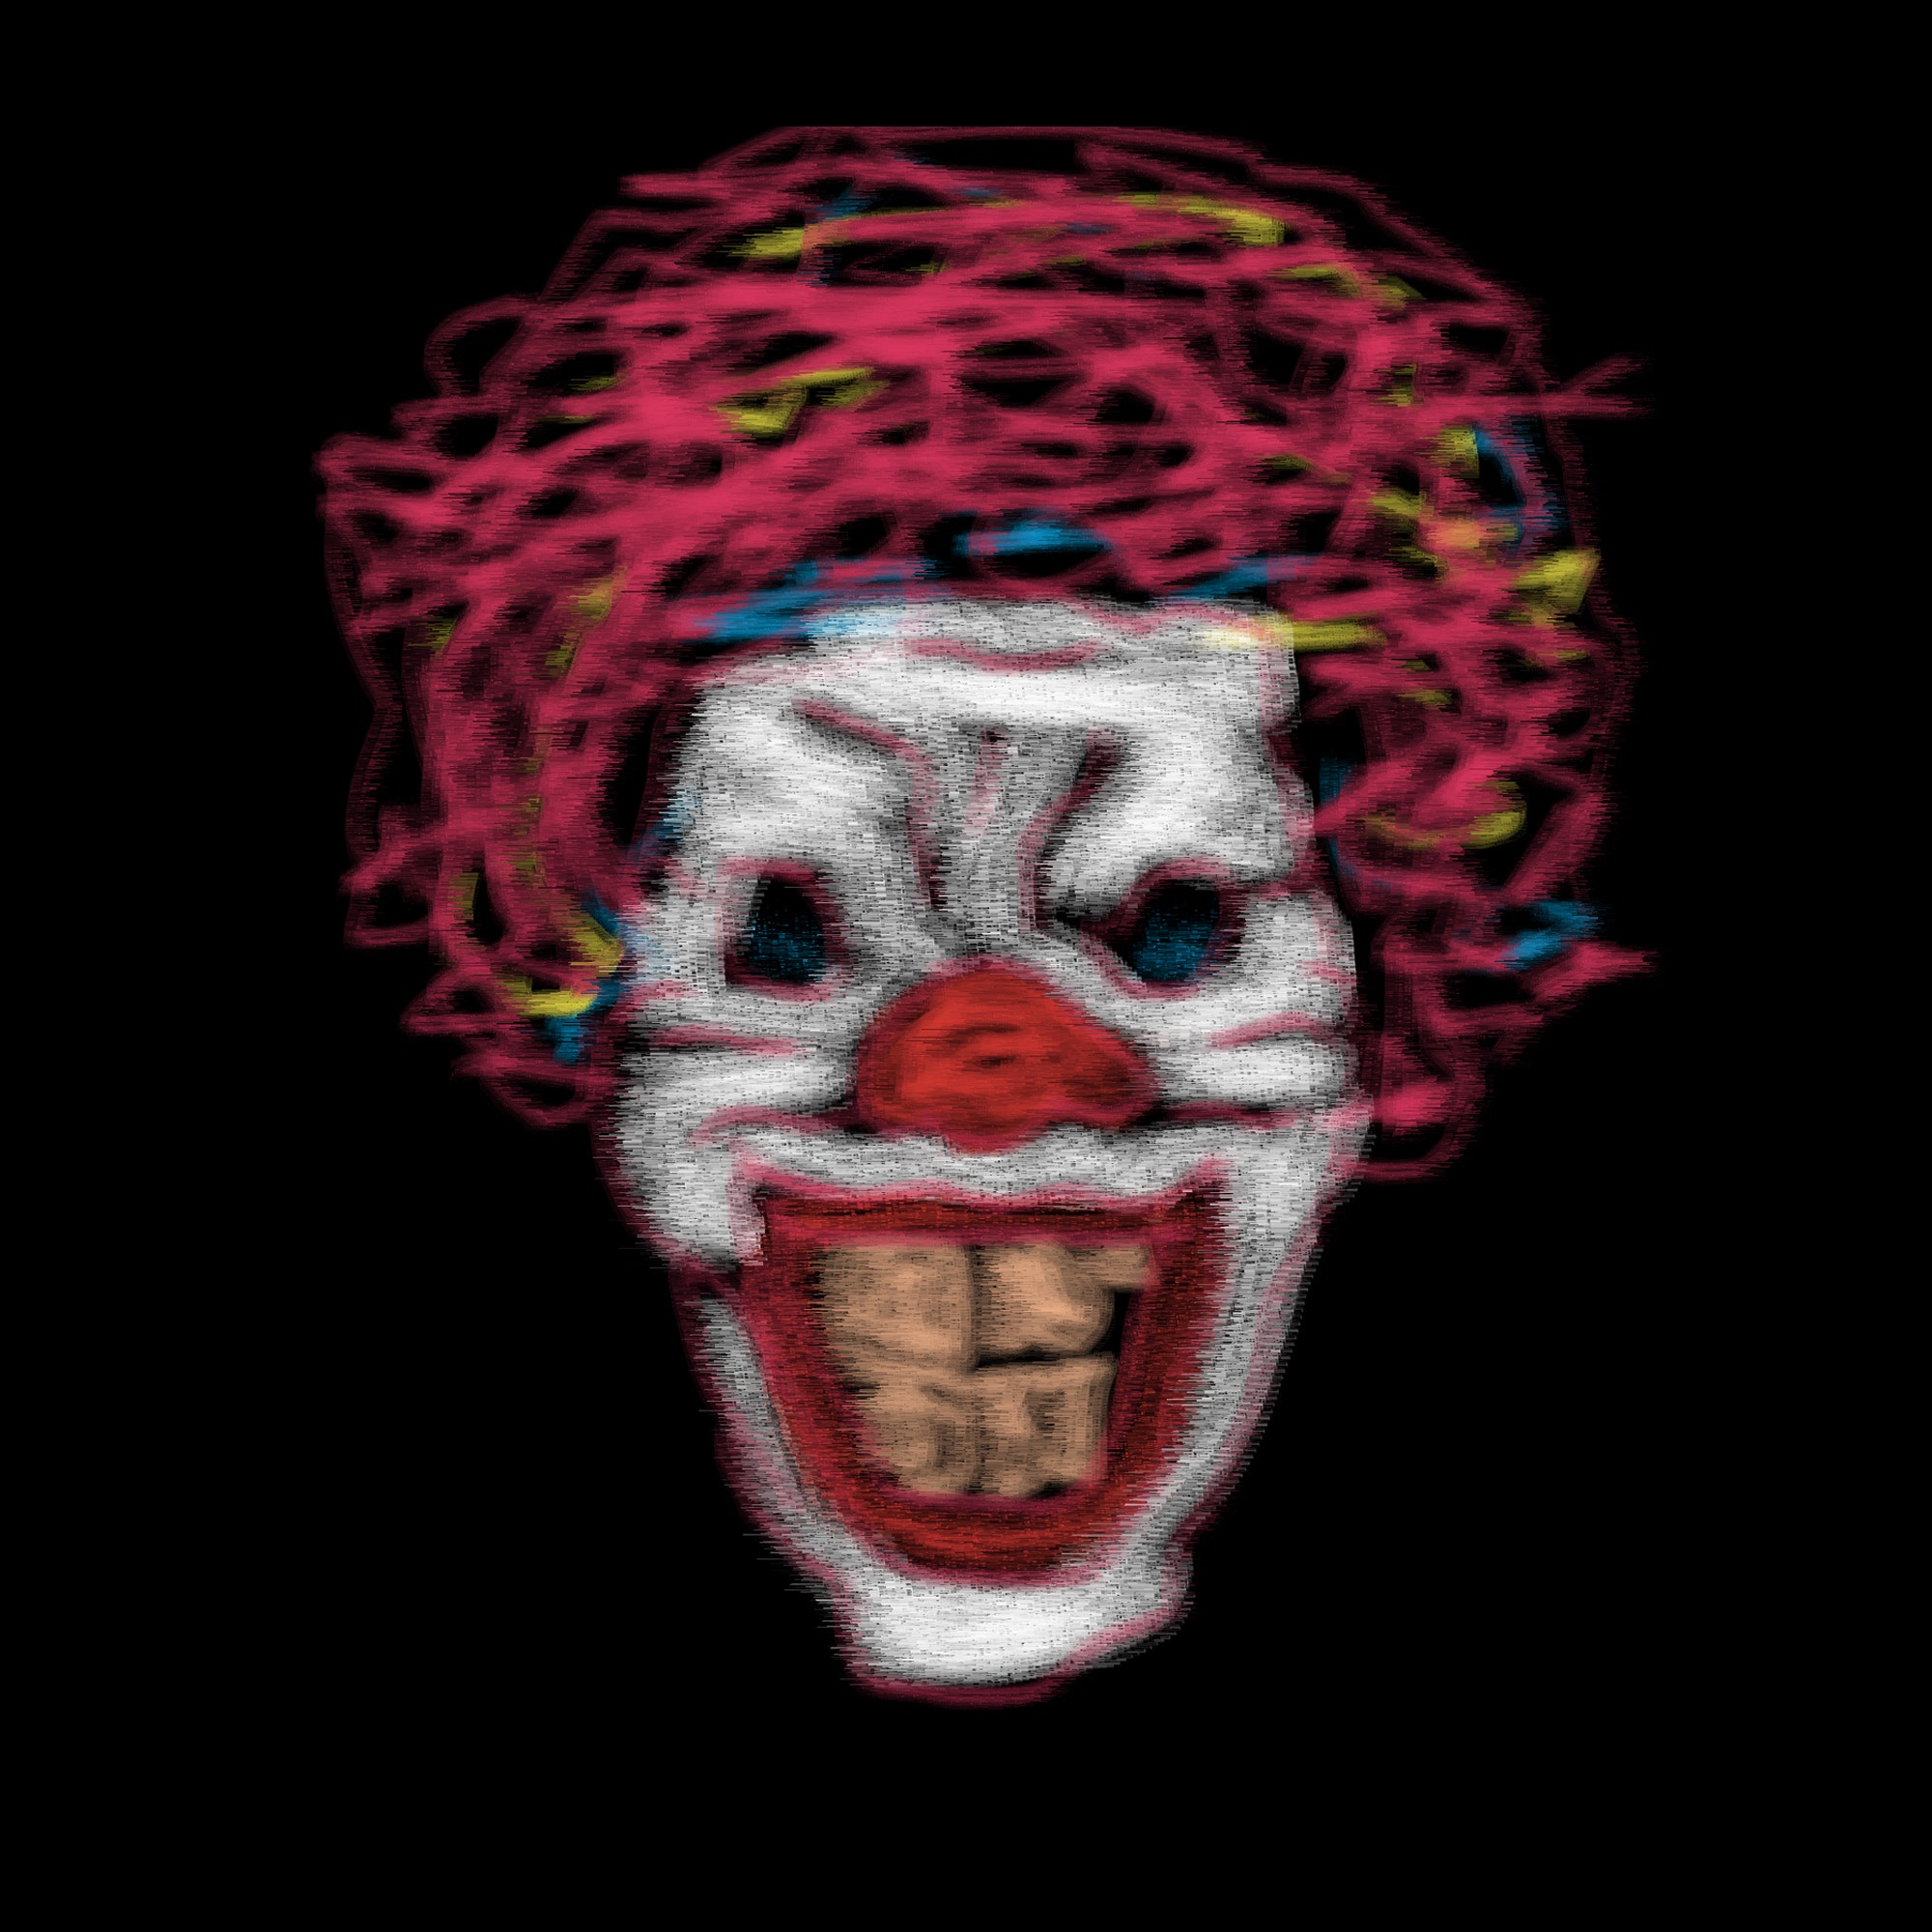 Clown portrait #9